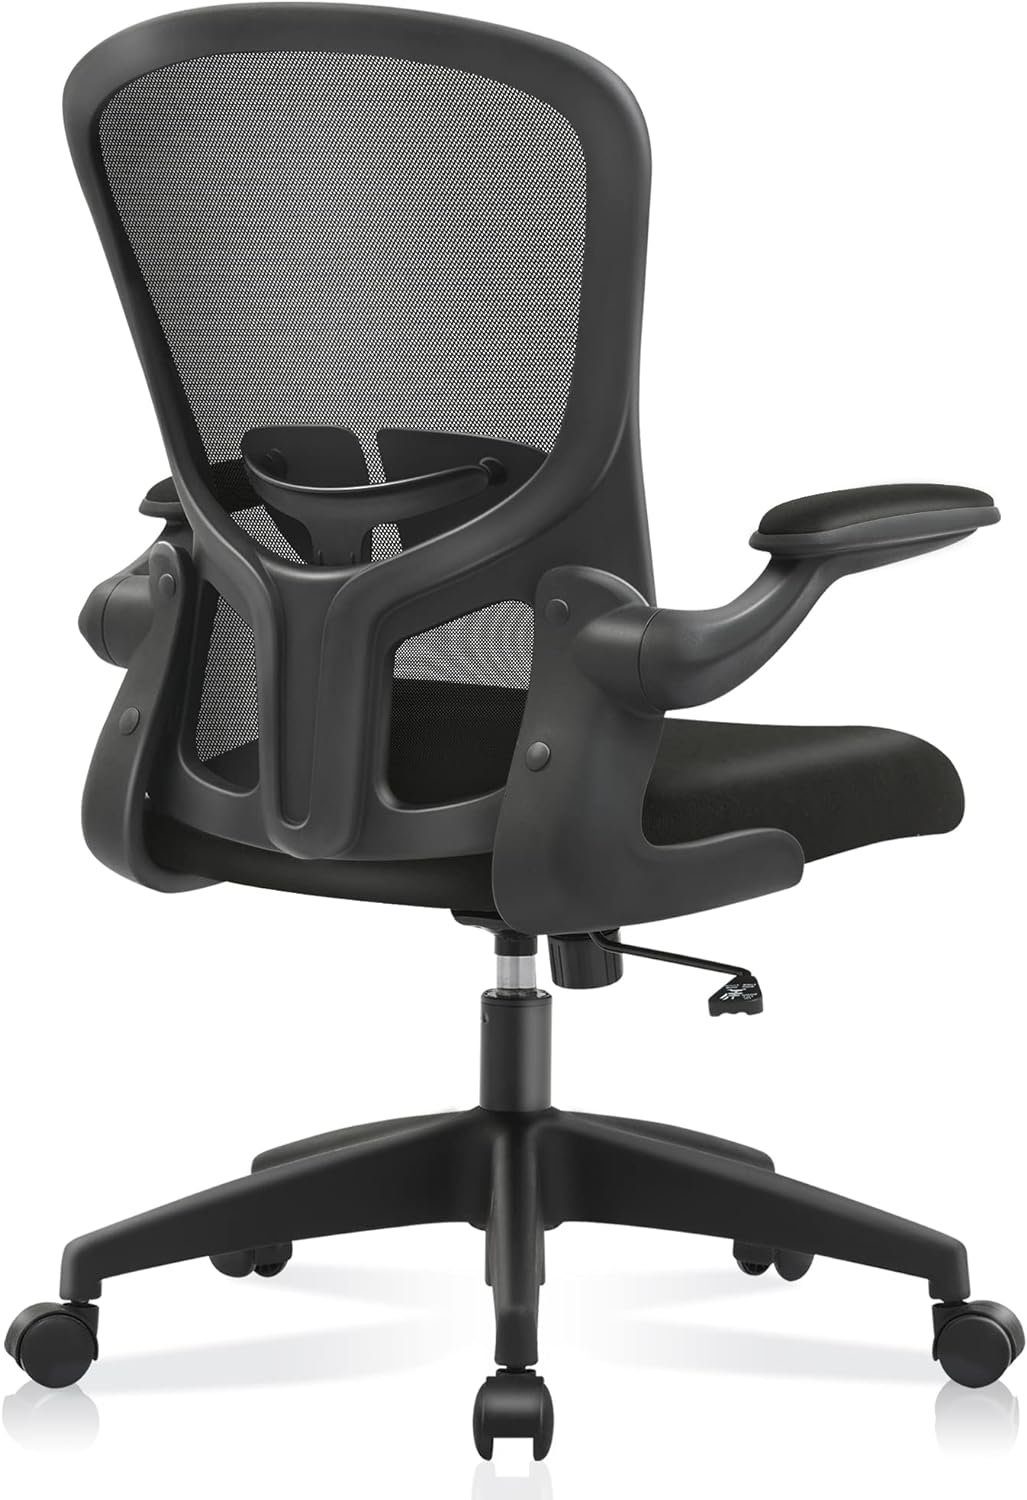 FelixKing Bürostuhl (Ergonomischer Burostuhl,Schreibtischstuhl mit Verstellbarer Sitz), Bürostuhl Schreibtischstuhl Hochklappbaren Armlehnen Verstellbarer